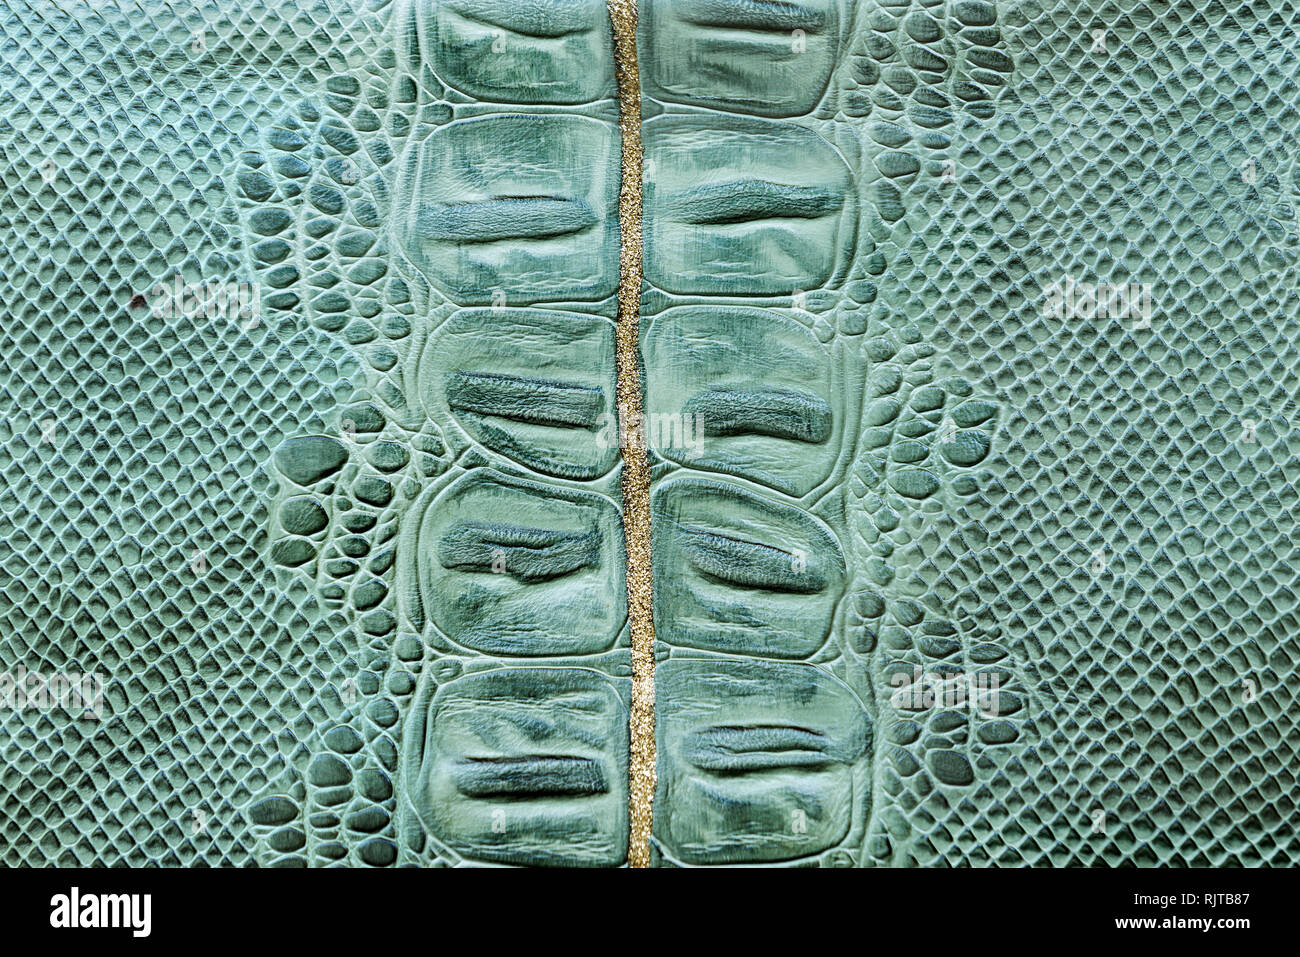 Dekorative Muster krokodilleder als Hintergrund oder Tapete Stockfotografie  - Alamy